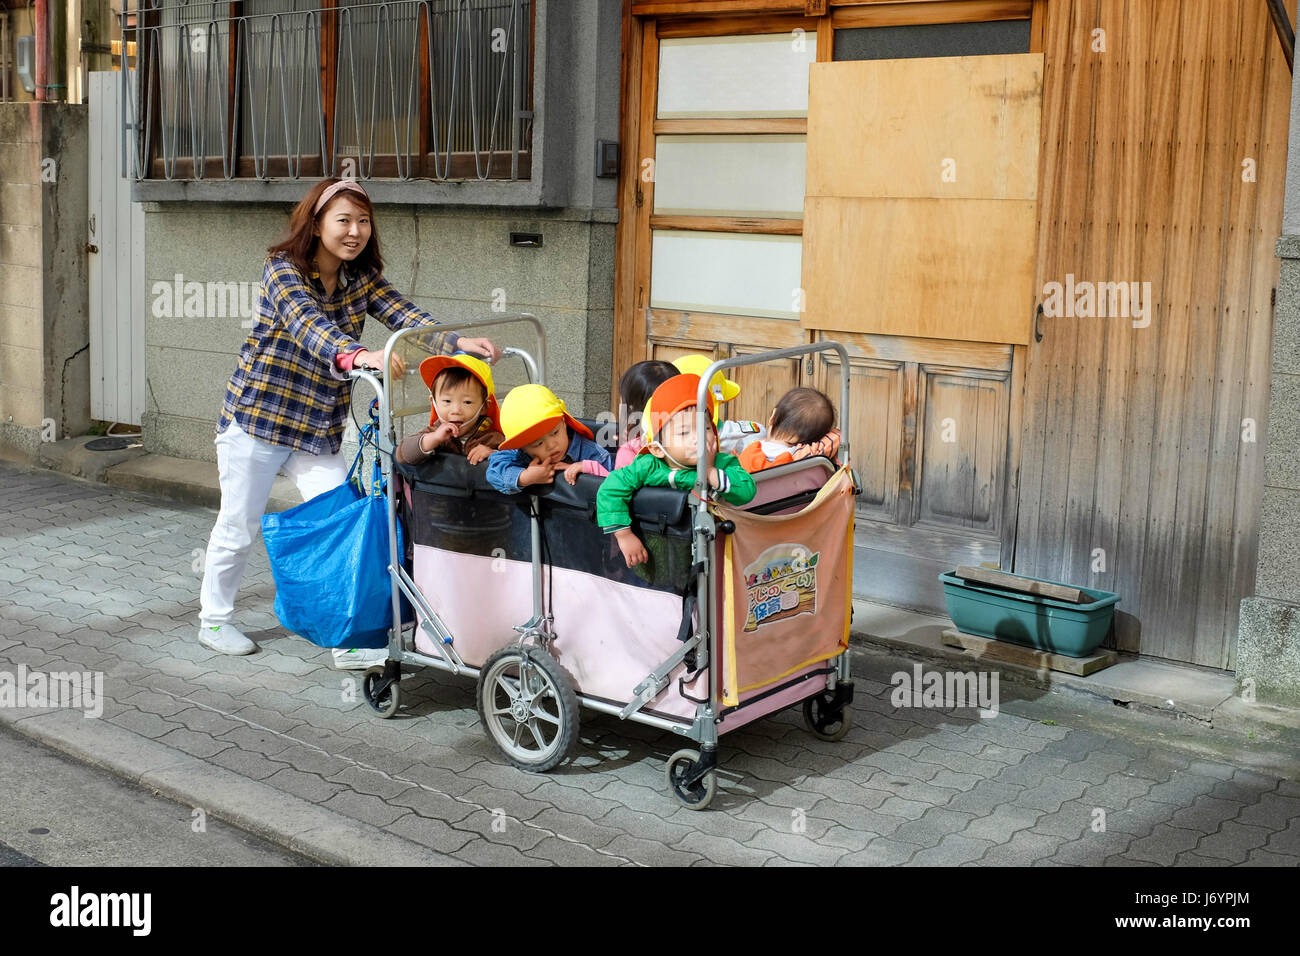 A teacher pushing a cart full of children. Stock Photo